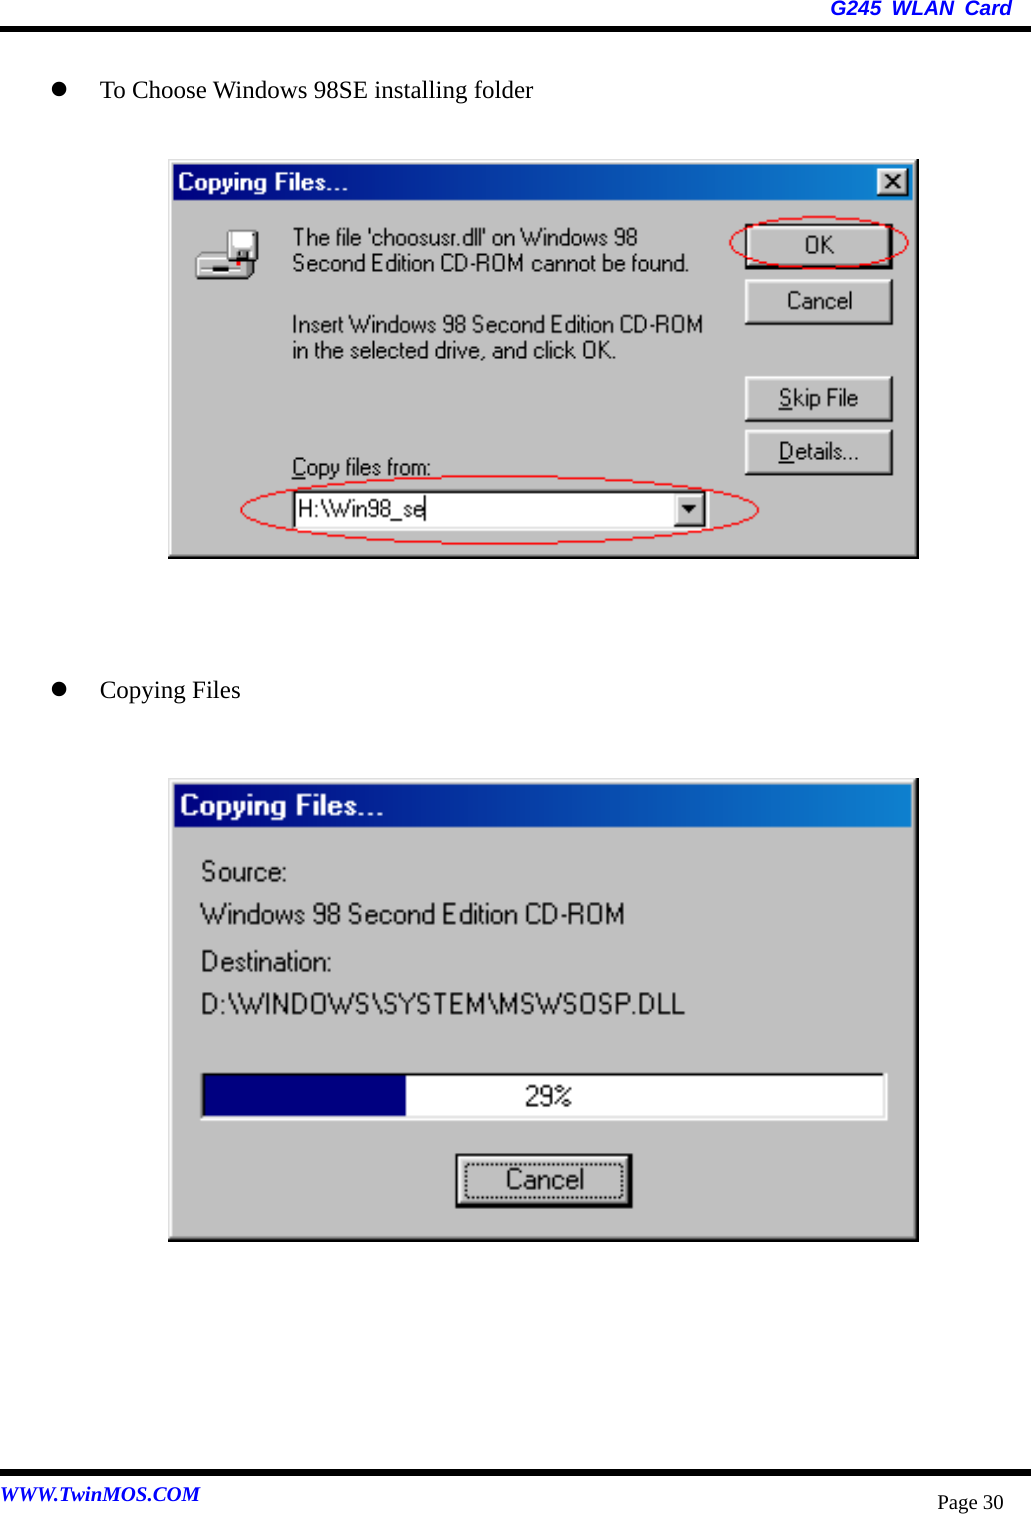   G245 WLAN Card WWW.TwinMOS.COM  Page 30   To Choose Windows 98SE installing folder                  Copying Files                     